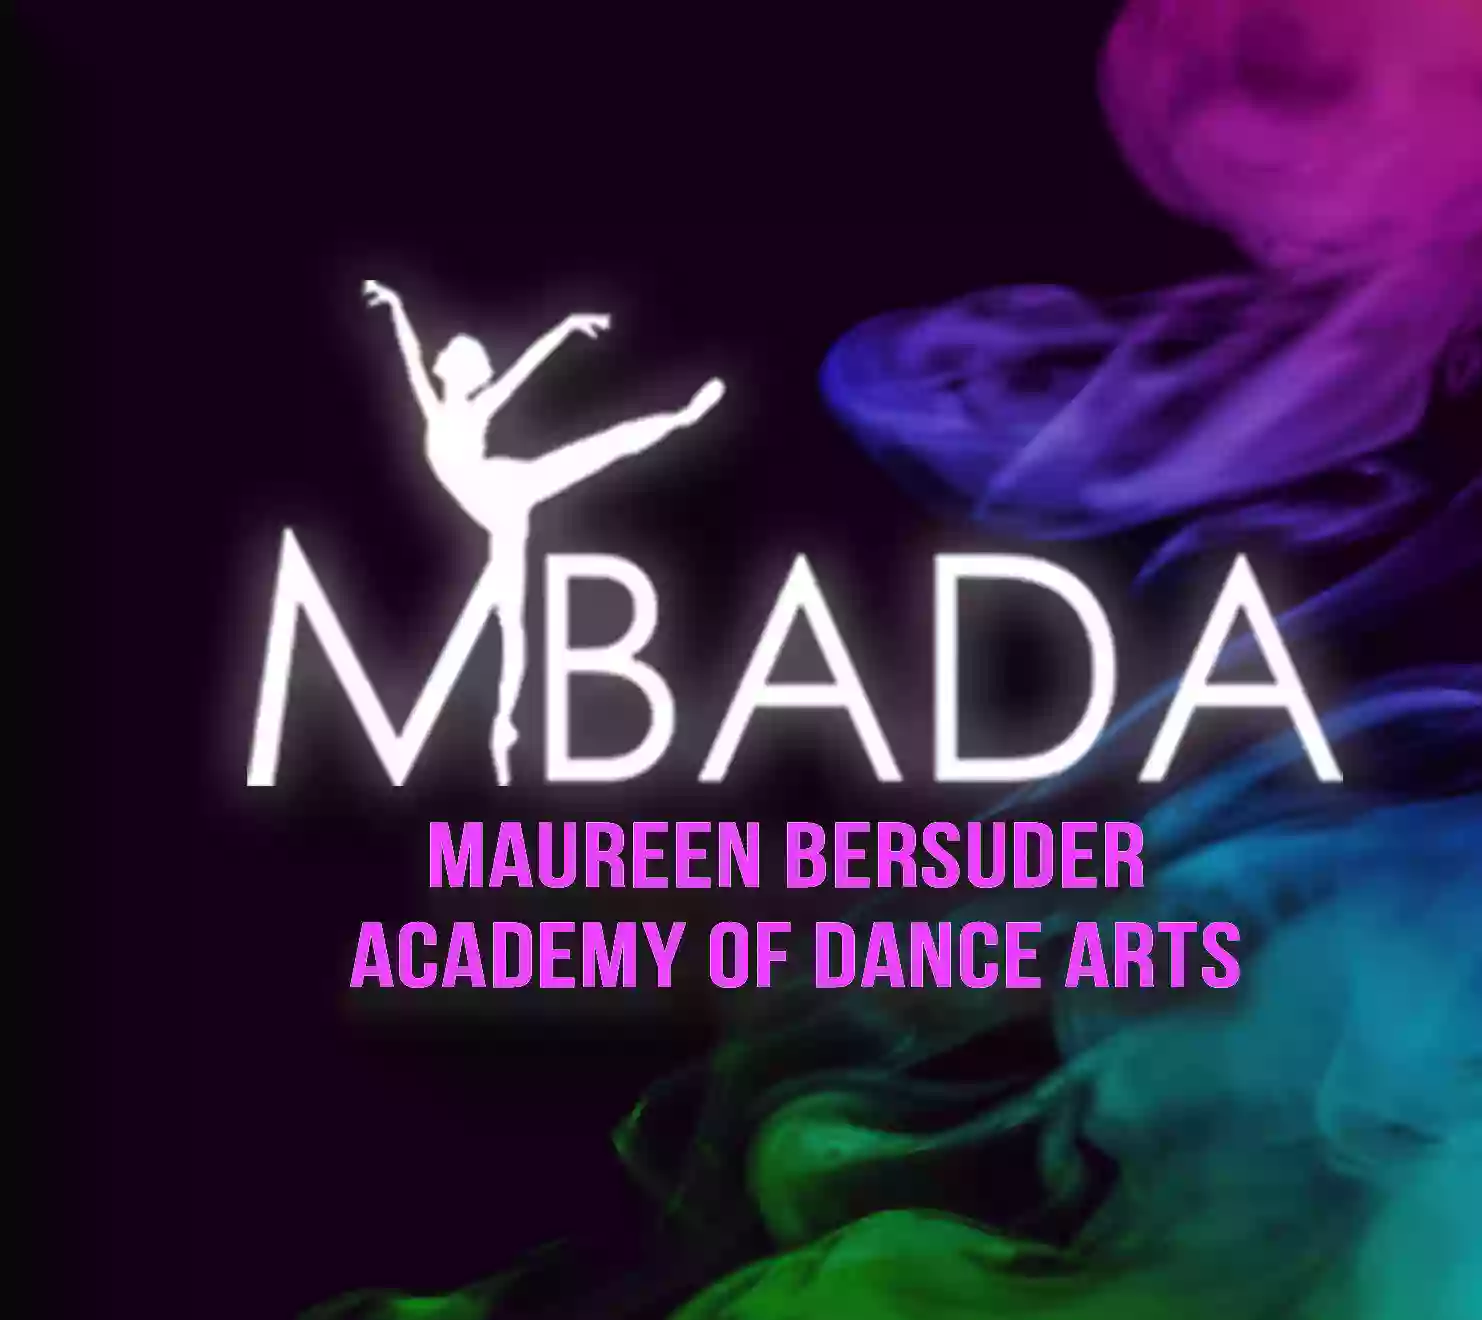 Maureen Bersuder Academy of Dance Arts - MBADA